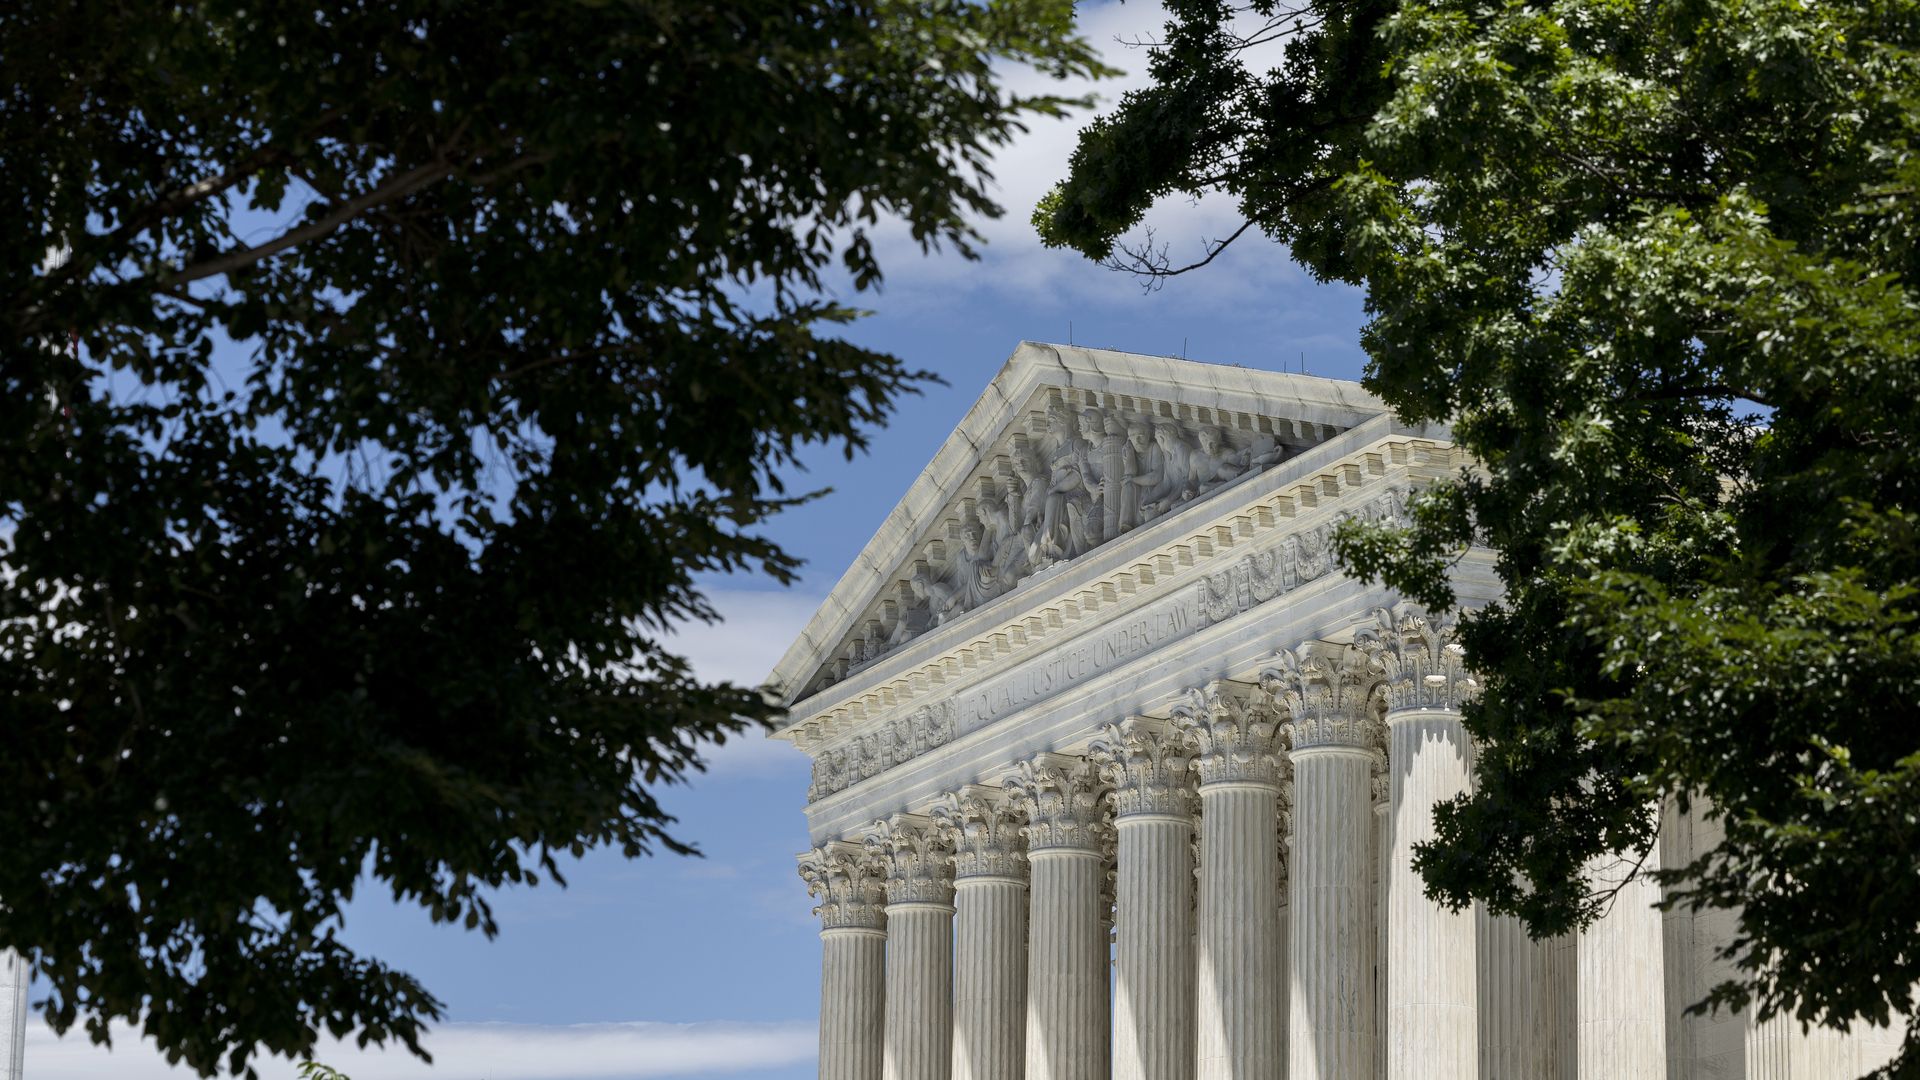 Picture of Supreme Court